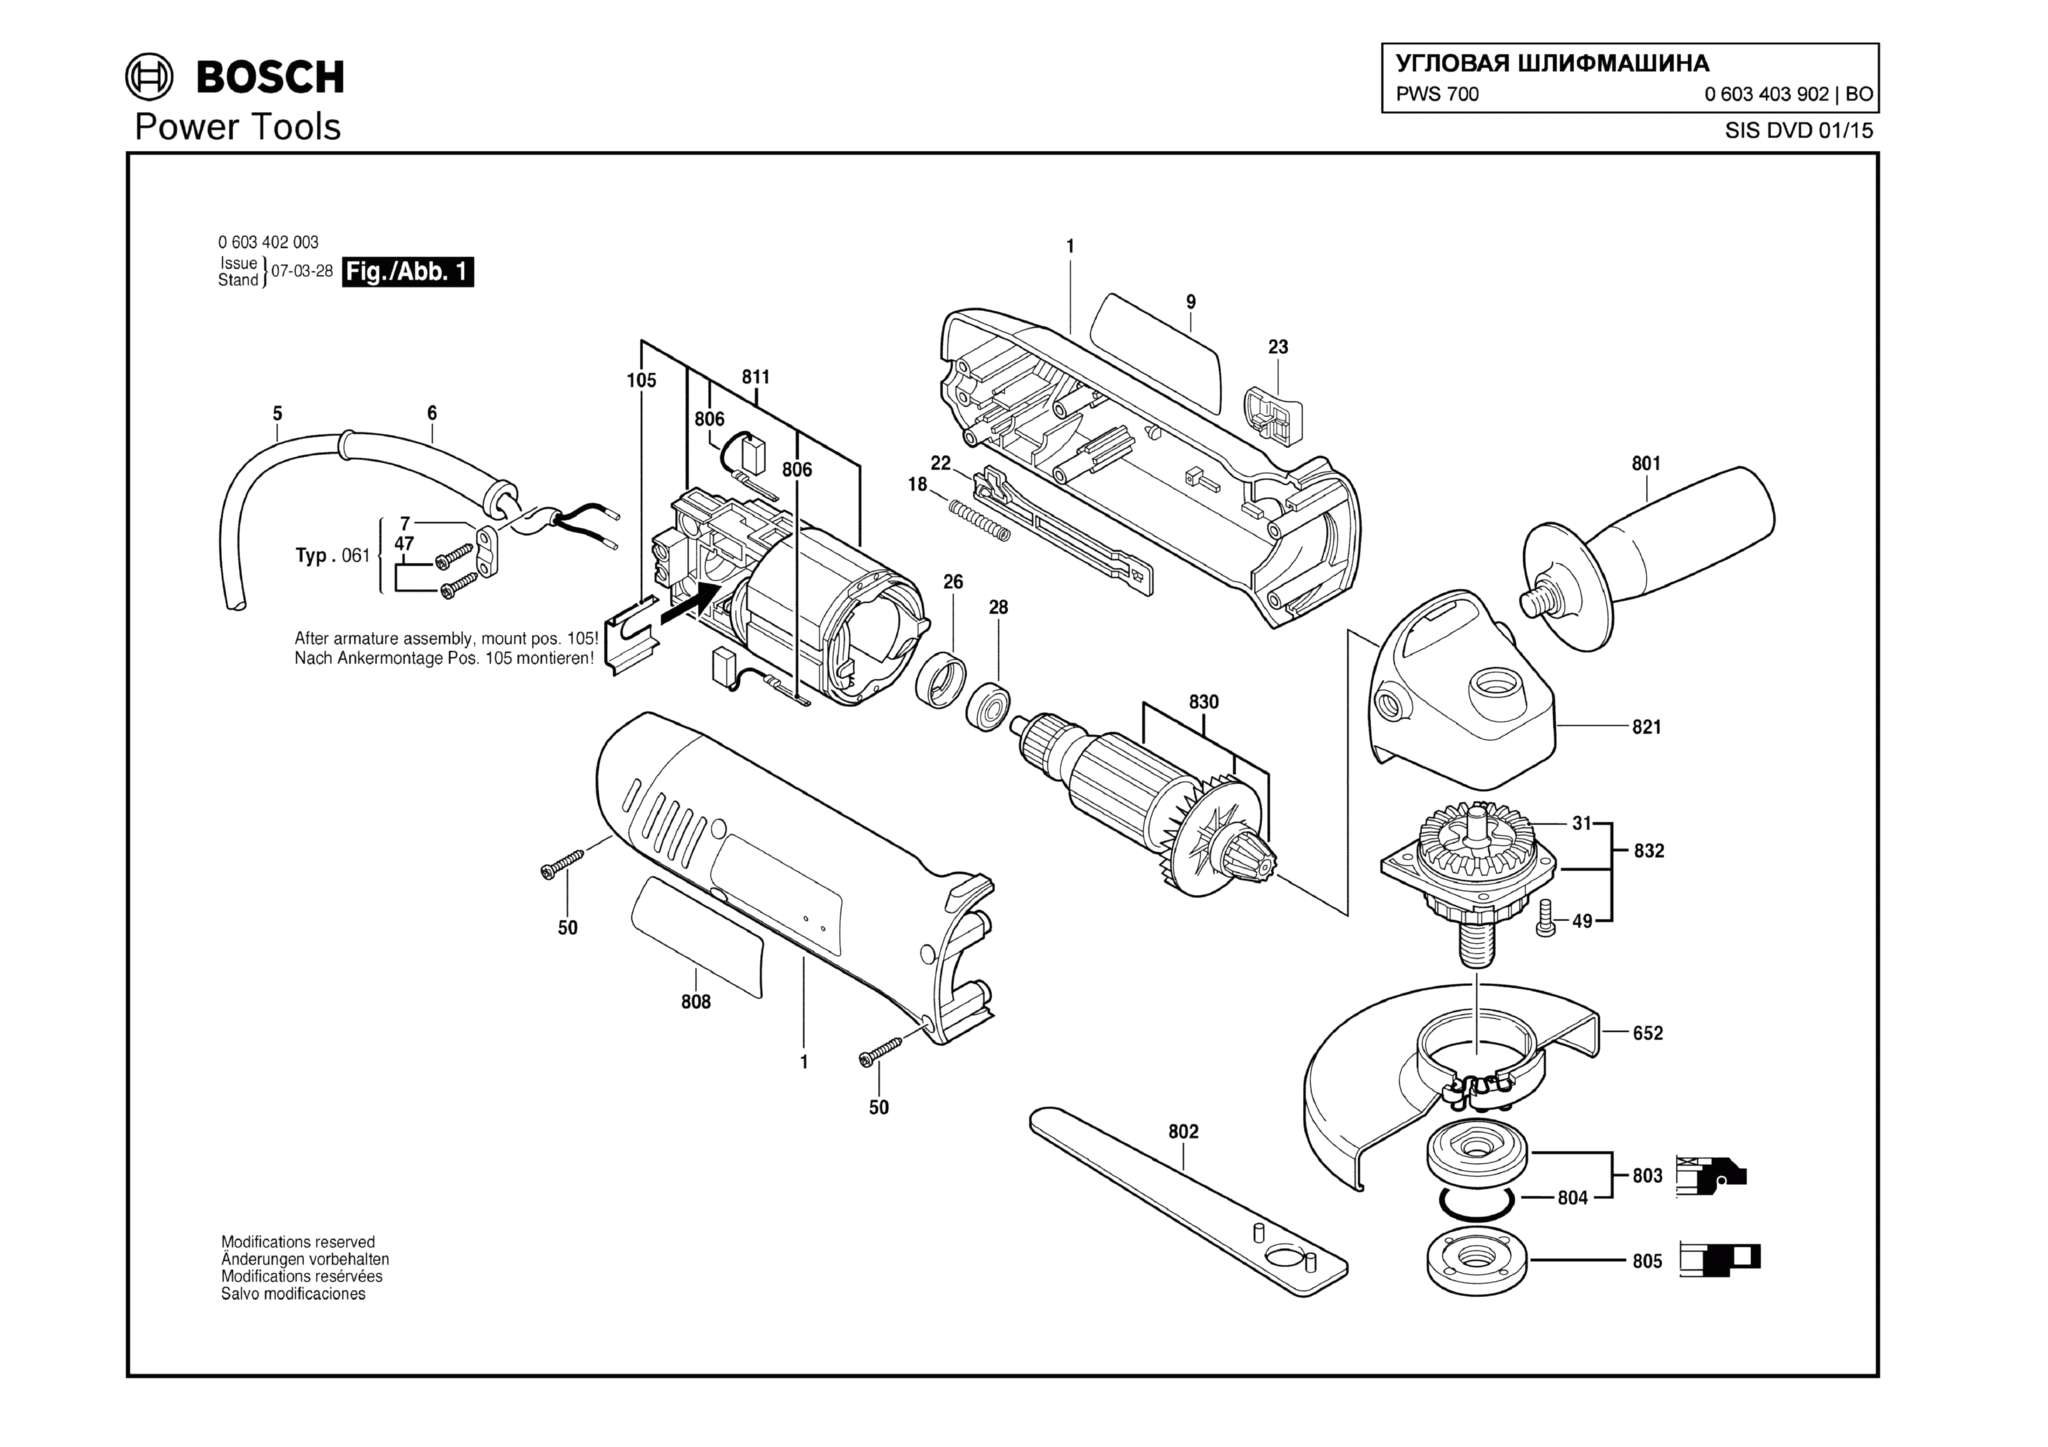 Запчасти, схема и деталировка Bosch PWS 700 (ТИП 0603403902)